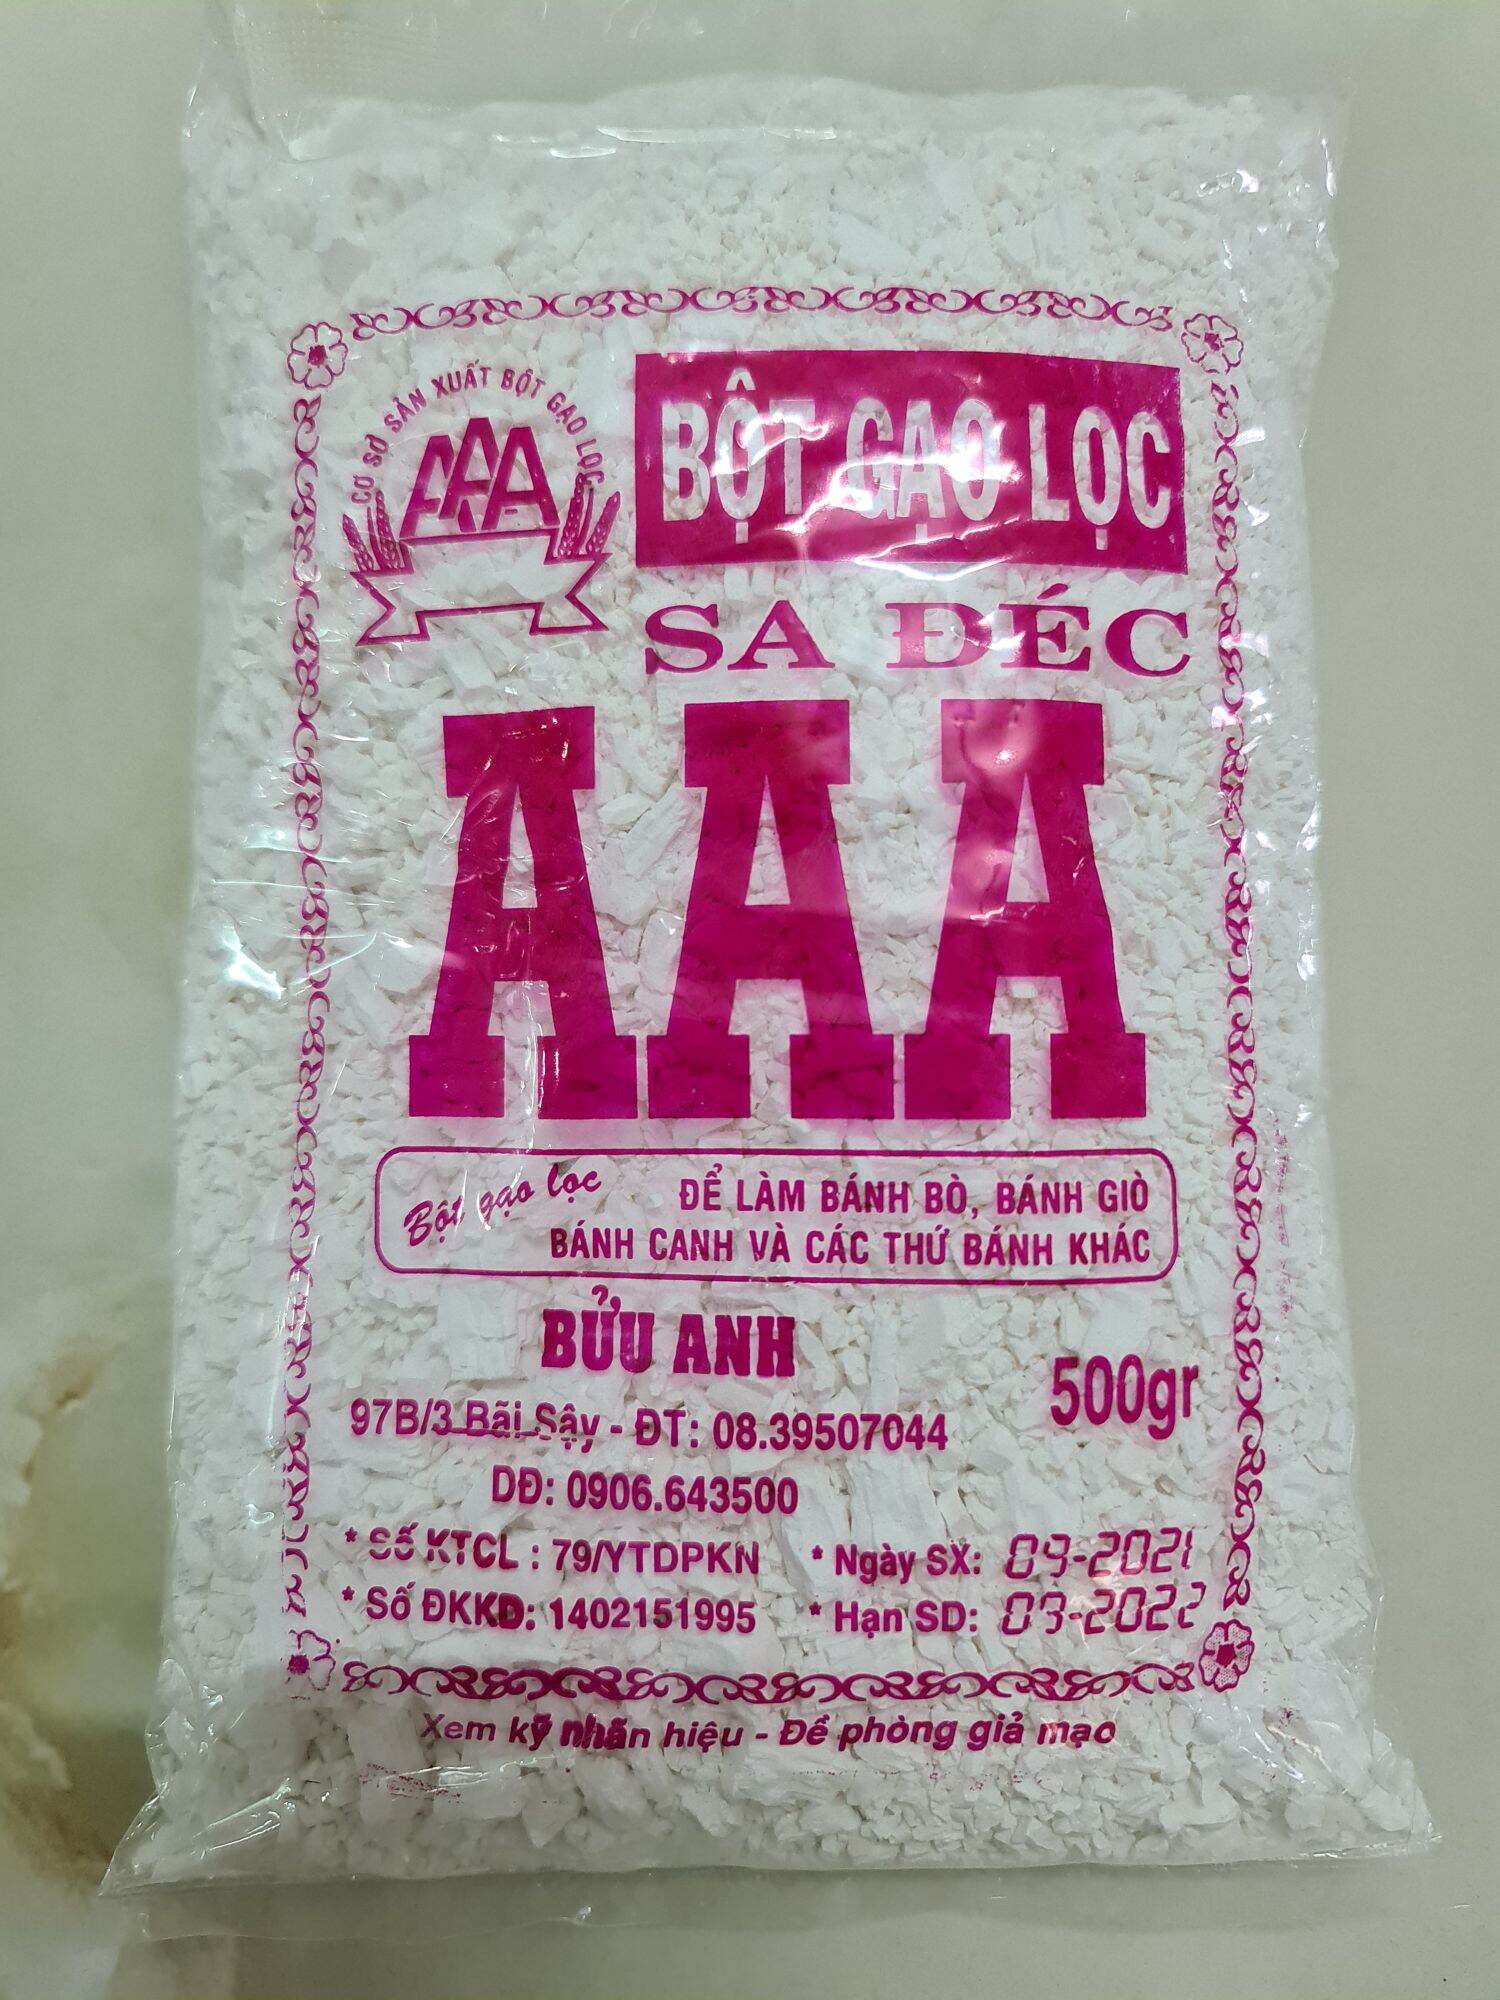 Bột gạo lọc Sa Đéc hiệu AAA gói 500g